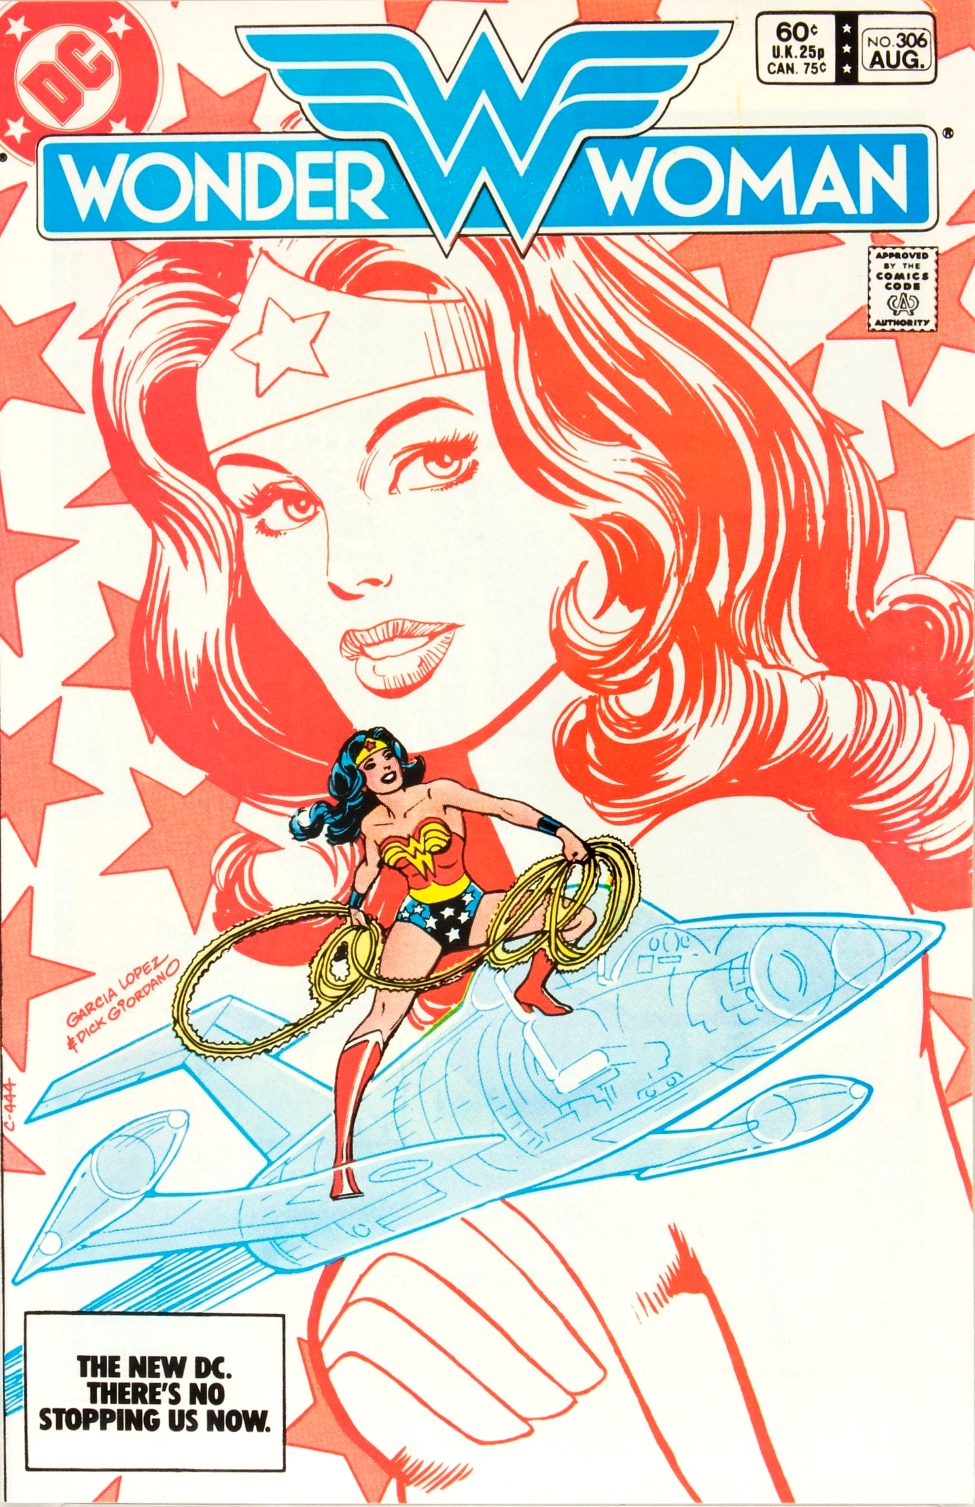 Wonder Woman, Vol. 1 by George Pérez